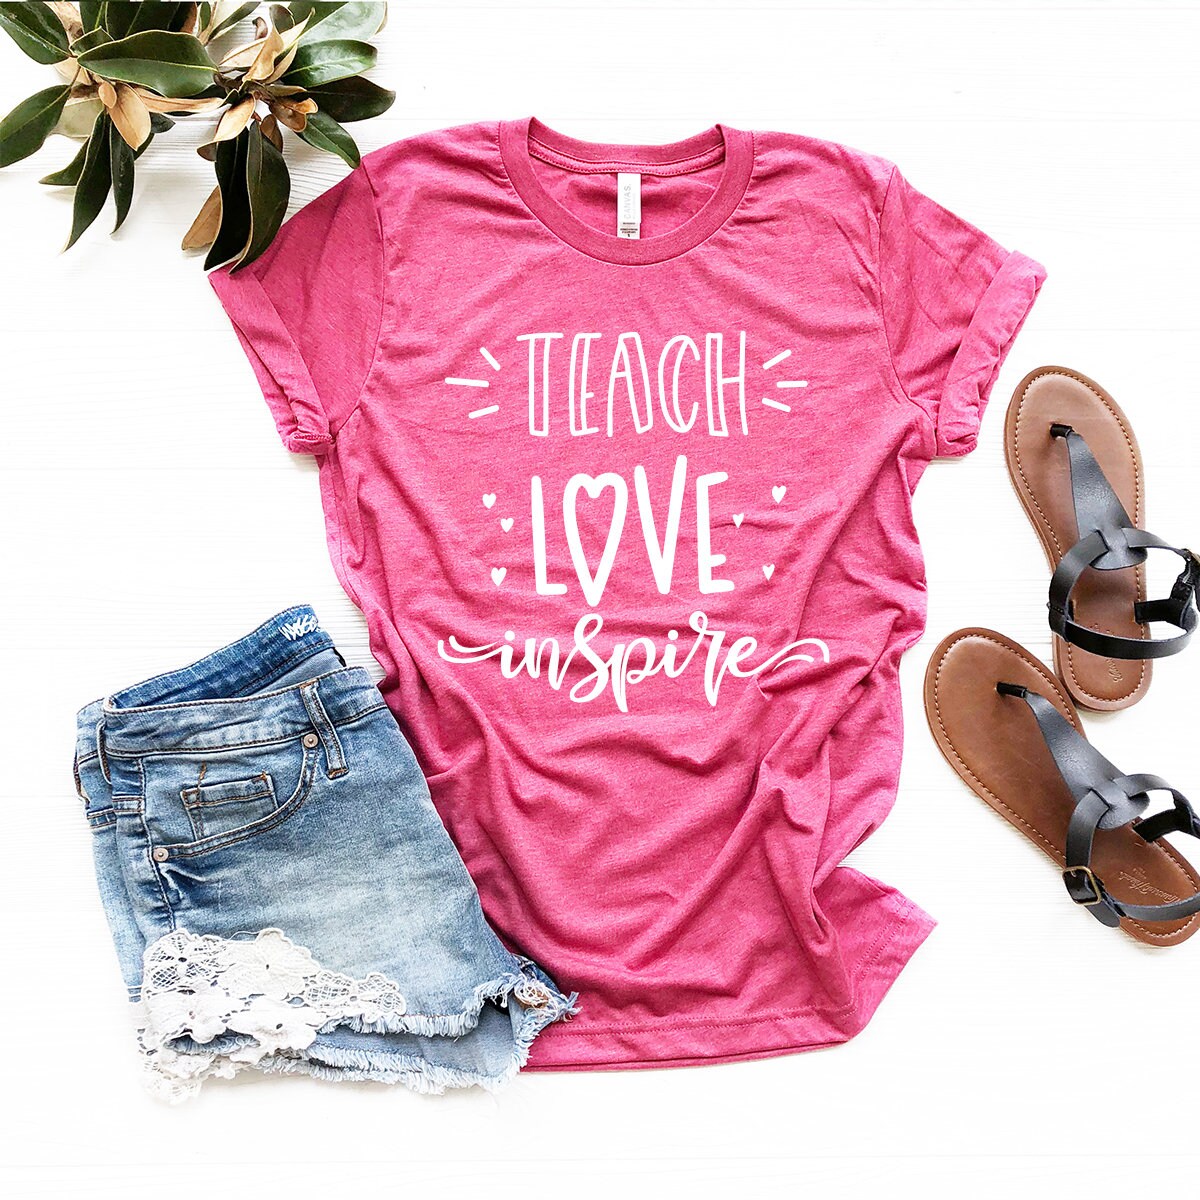 Love To Teach Shirt, Custom Teacher Shirt, Teach Love Inspire Shirt, Kindergarten Educator Tee, Teachers Shirt, Funny Teacher Shirt - Fastdeliverytees.com